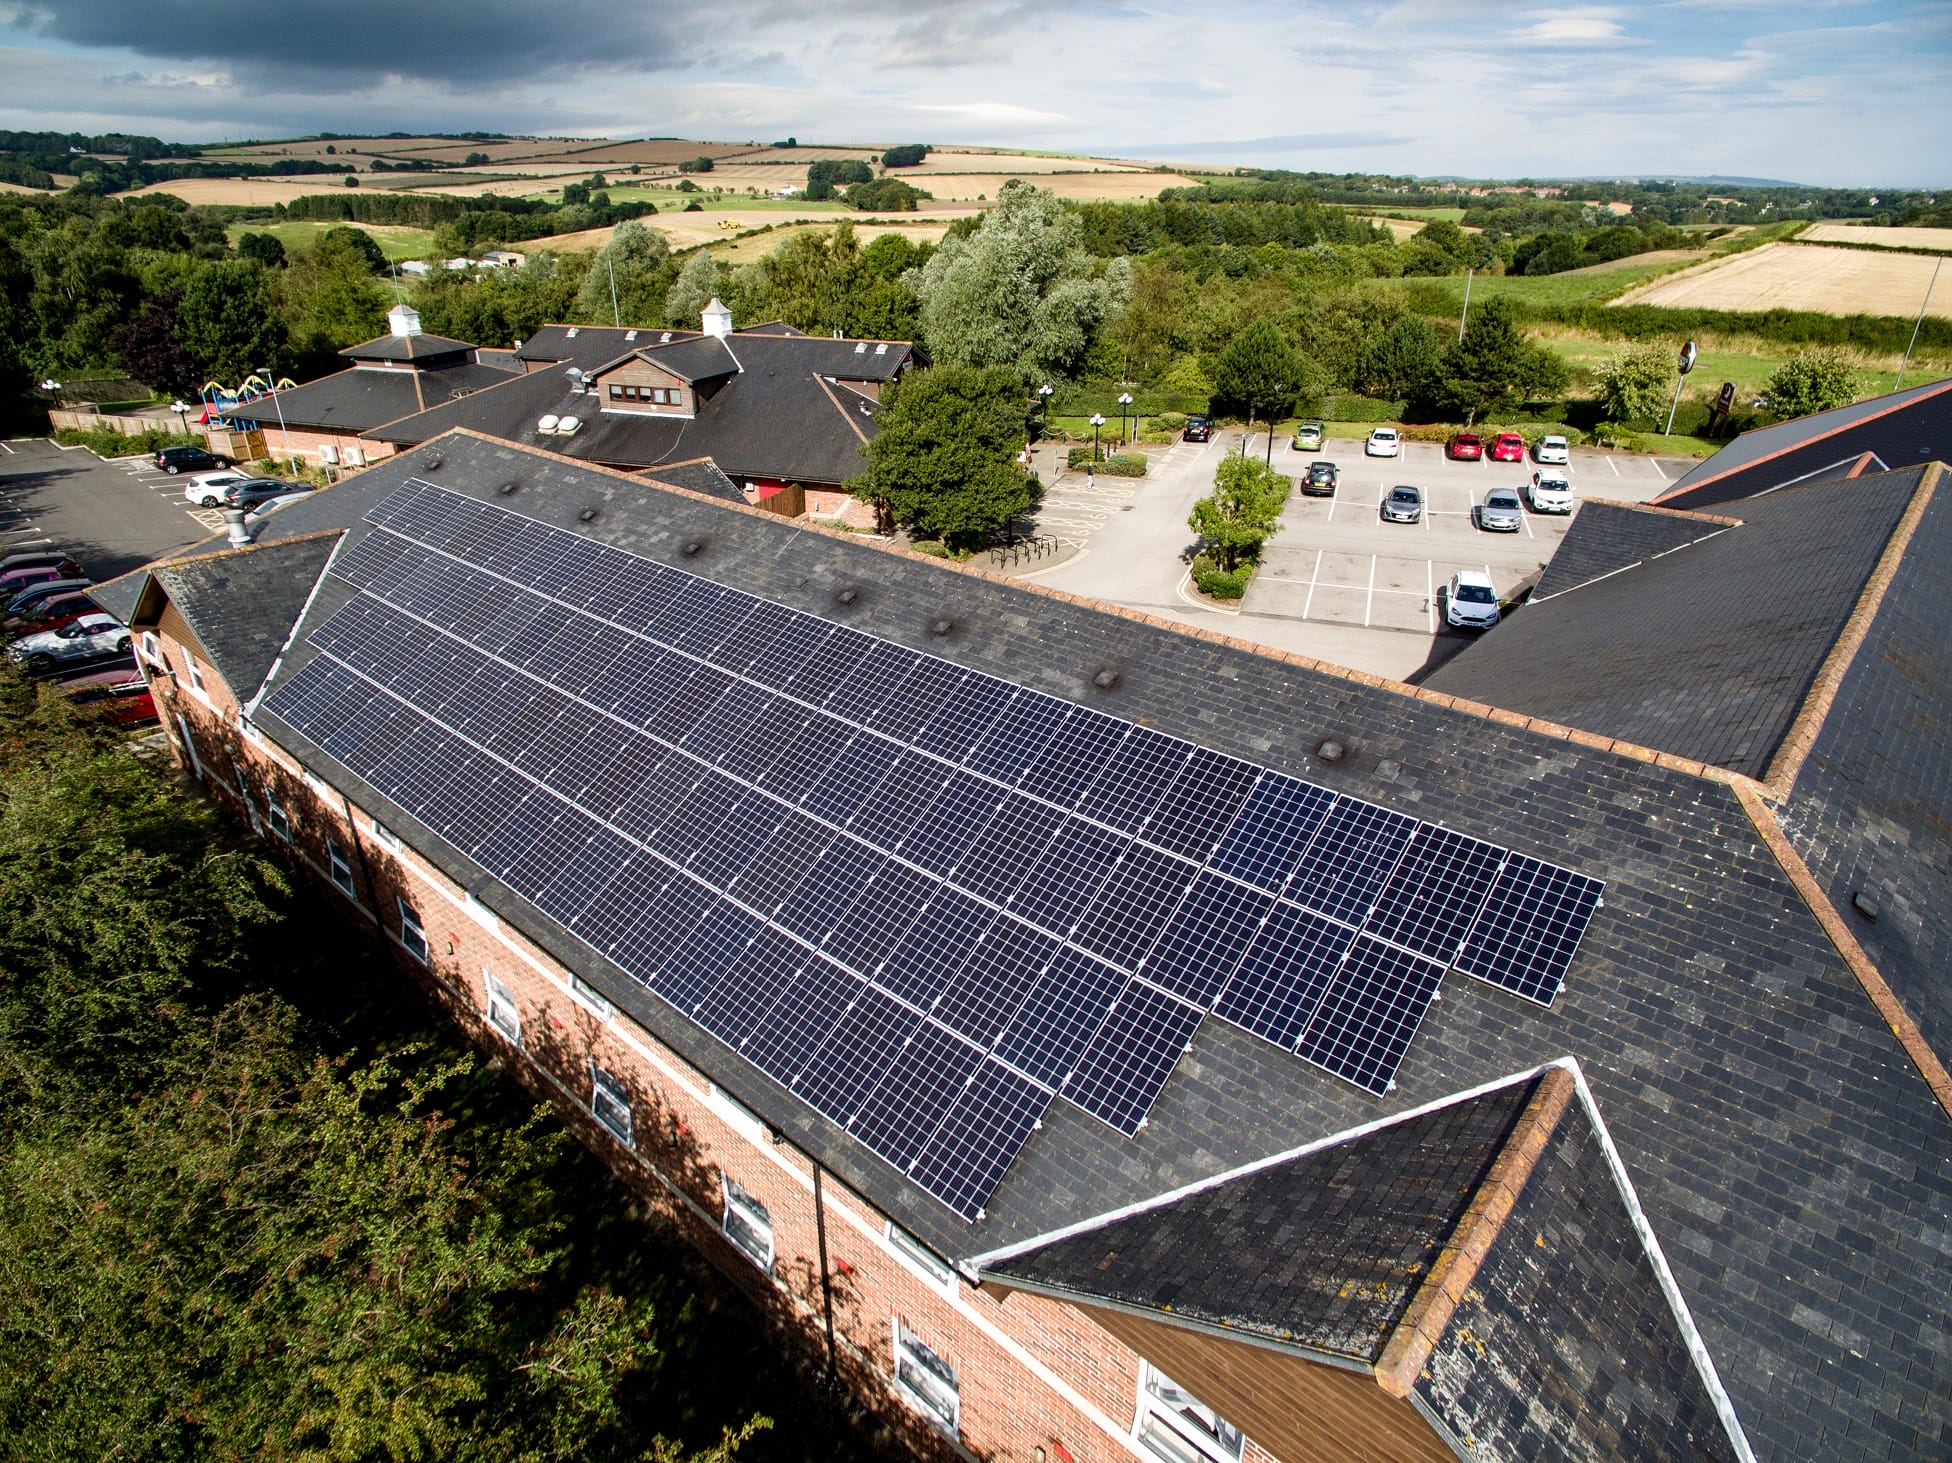 Anesco installs solar panels for Premier Inn